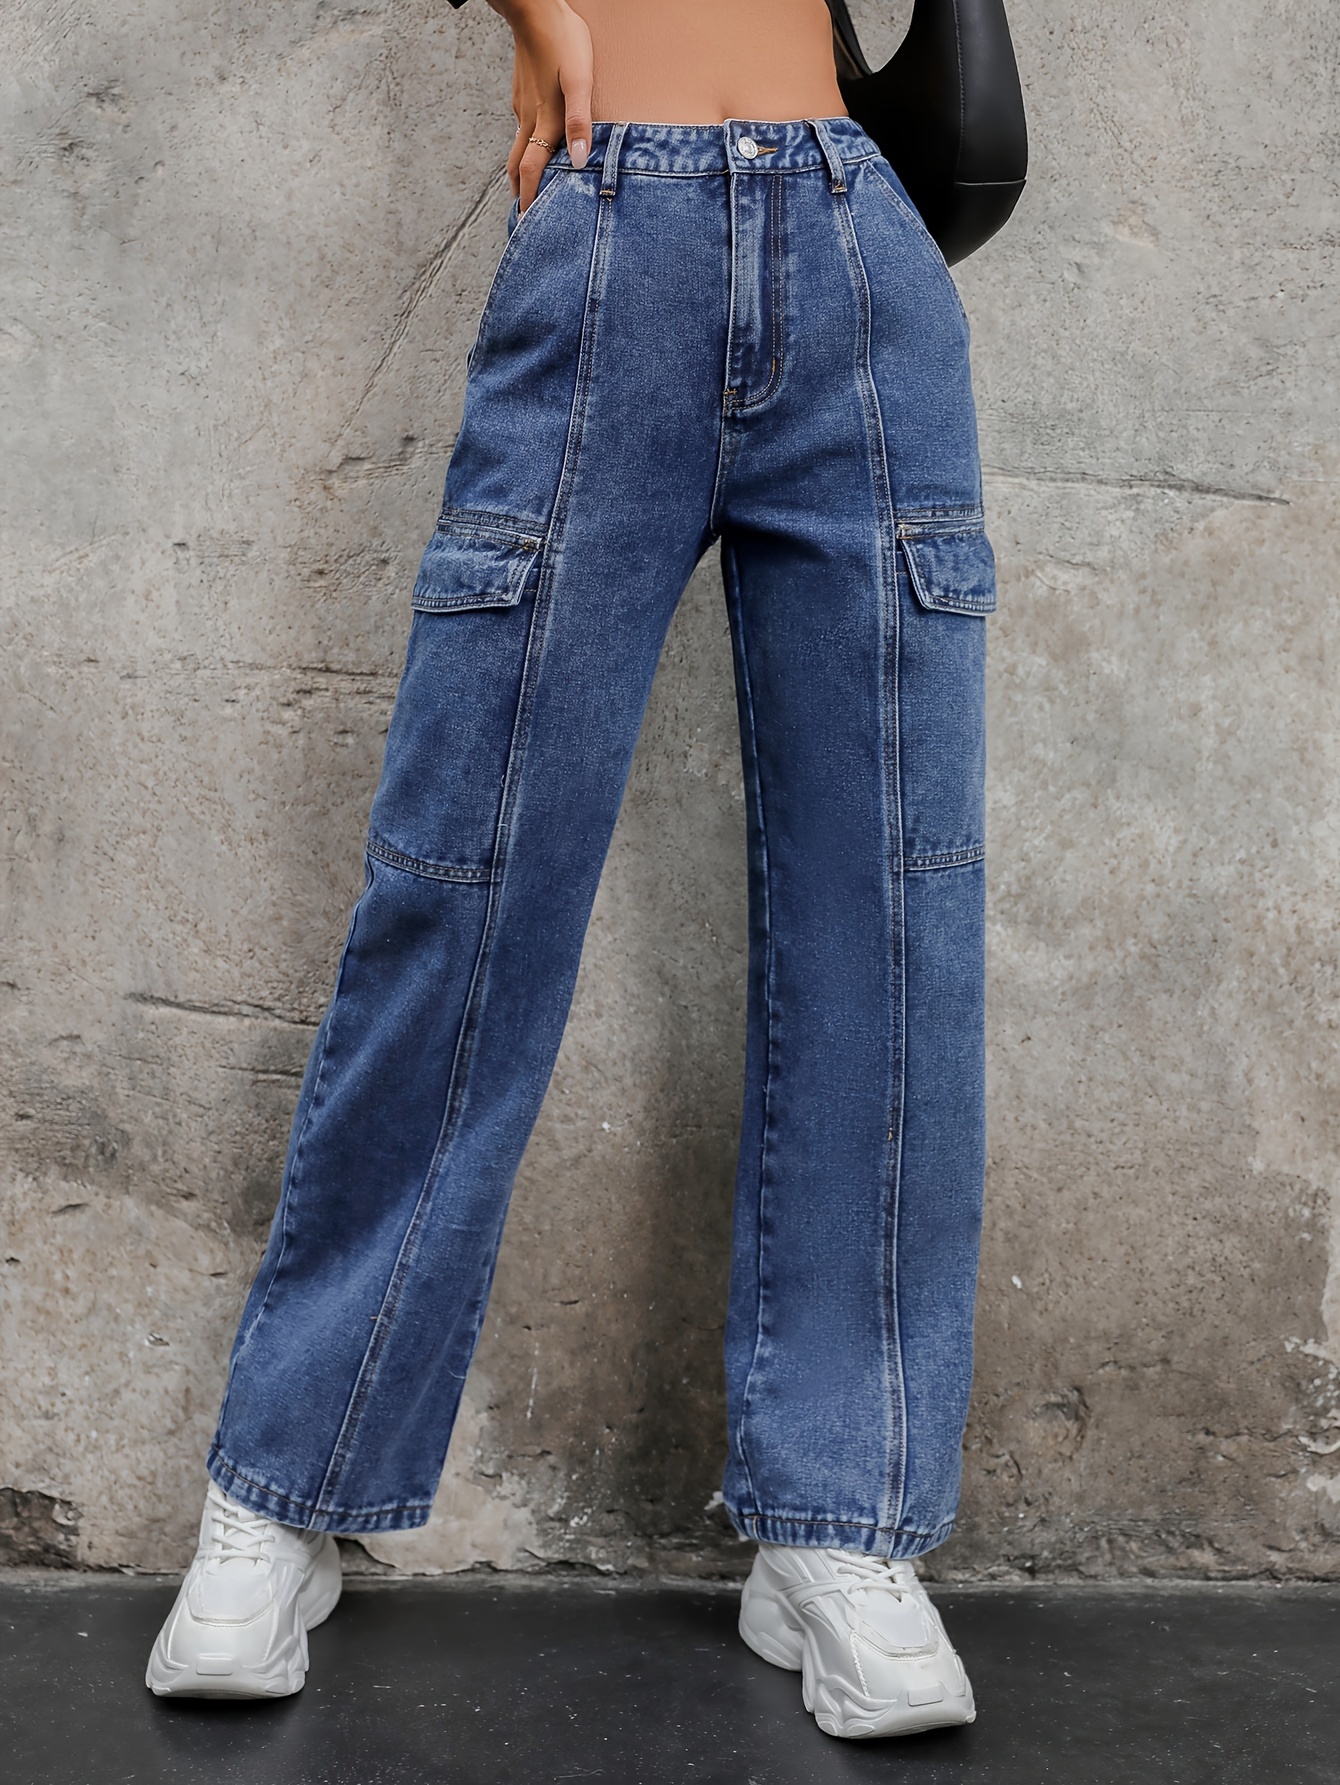 Pantalon Jean Basico Bolsillos Laterales - Tienda Exclusiva de Ropa y  Accesorios para Mujer y niños